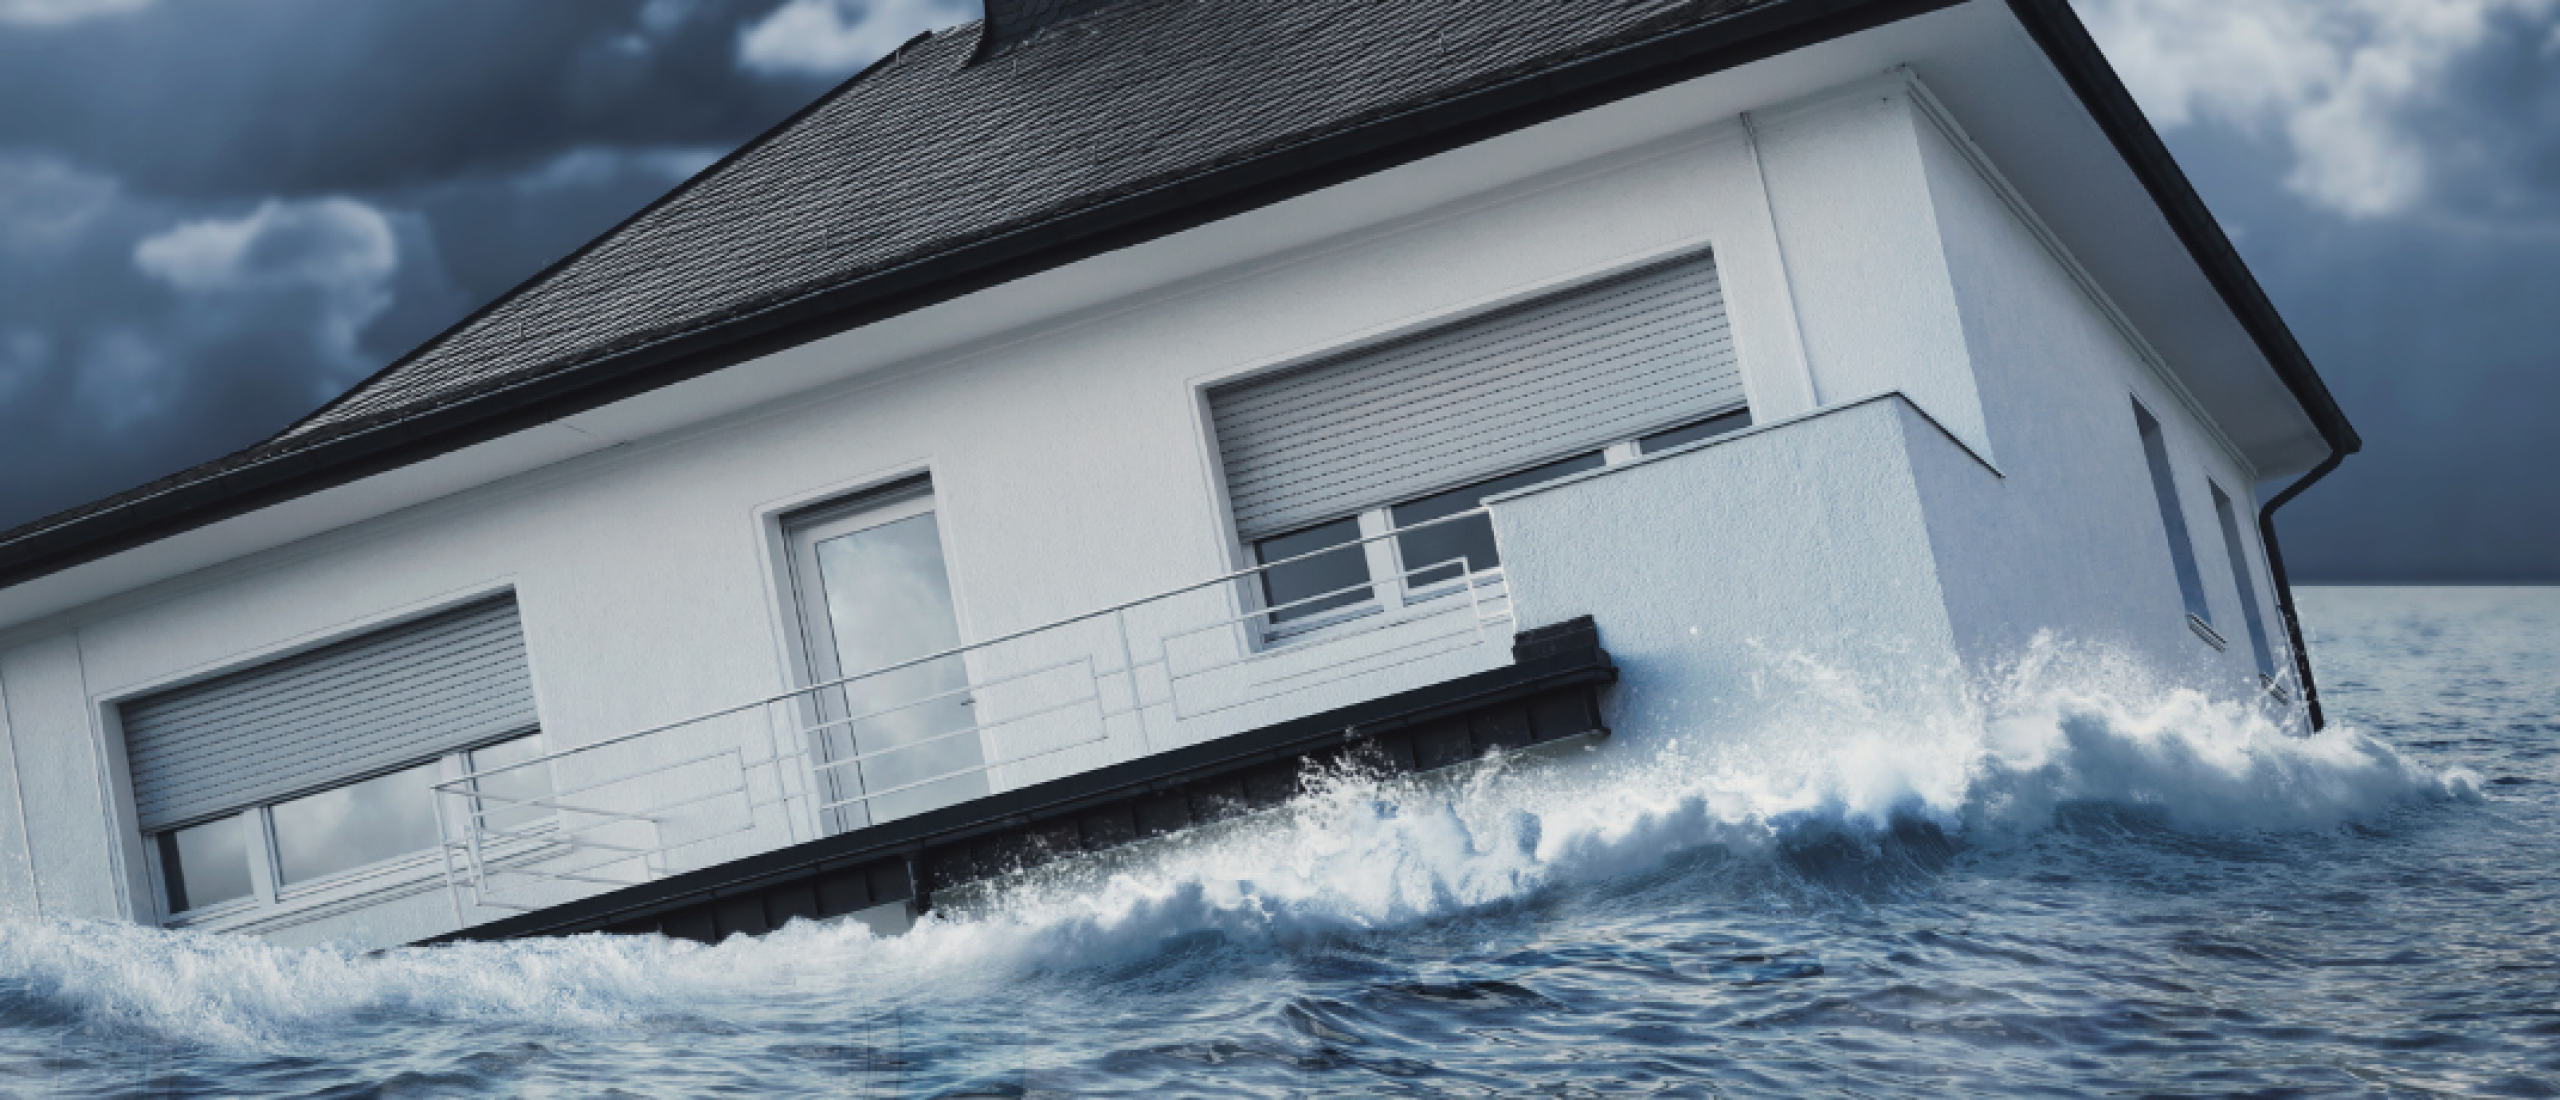 Staat jouw Spaanse woning in een overstromingsgebied?